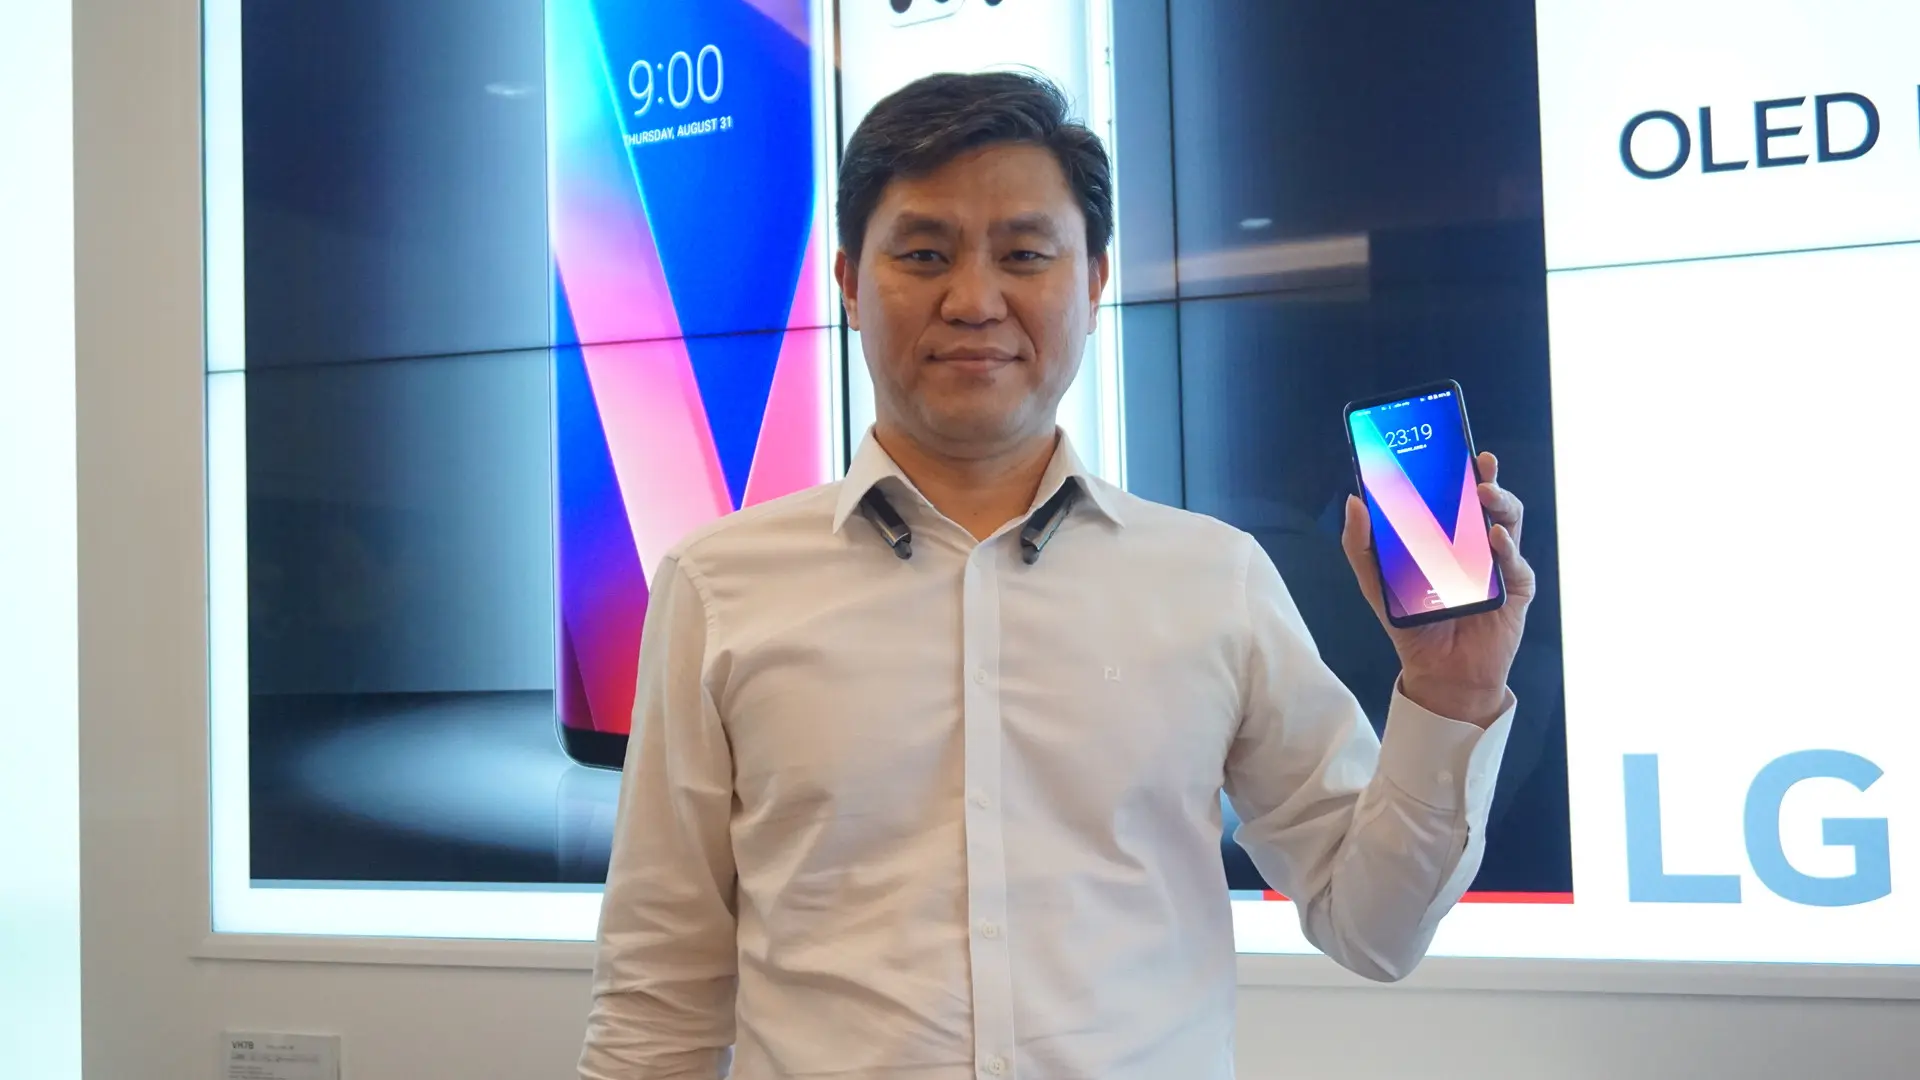 Head of LG Mobile Communications Indonesia Hee-gyun Jang membawa LG V30+ yang bakal dijual di Indonesia, Desember 2017 (Liputan6.com/ Agustin Setyo W)